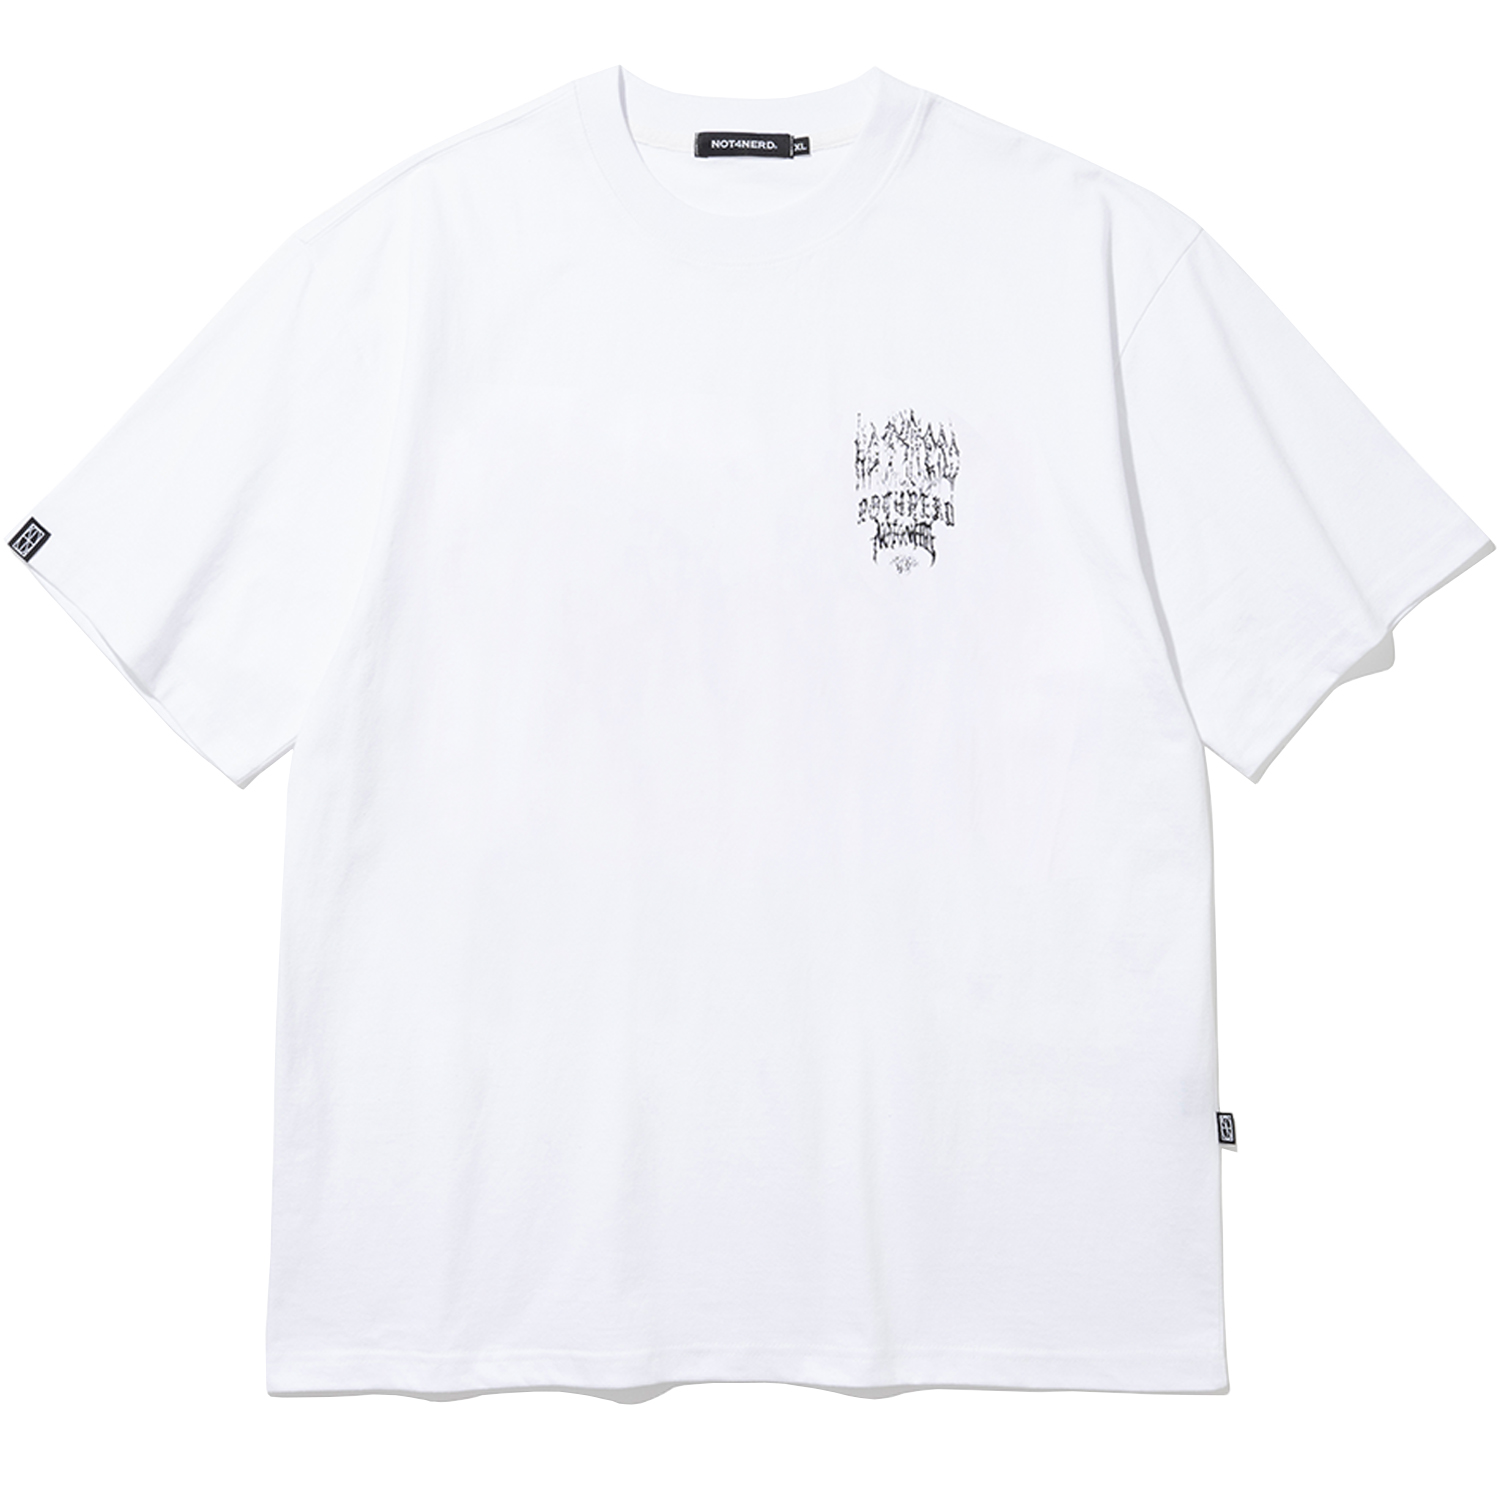 [4월 19일 예약배송] 24Multi Logo T-Shirts - White,NOT4NERD